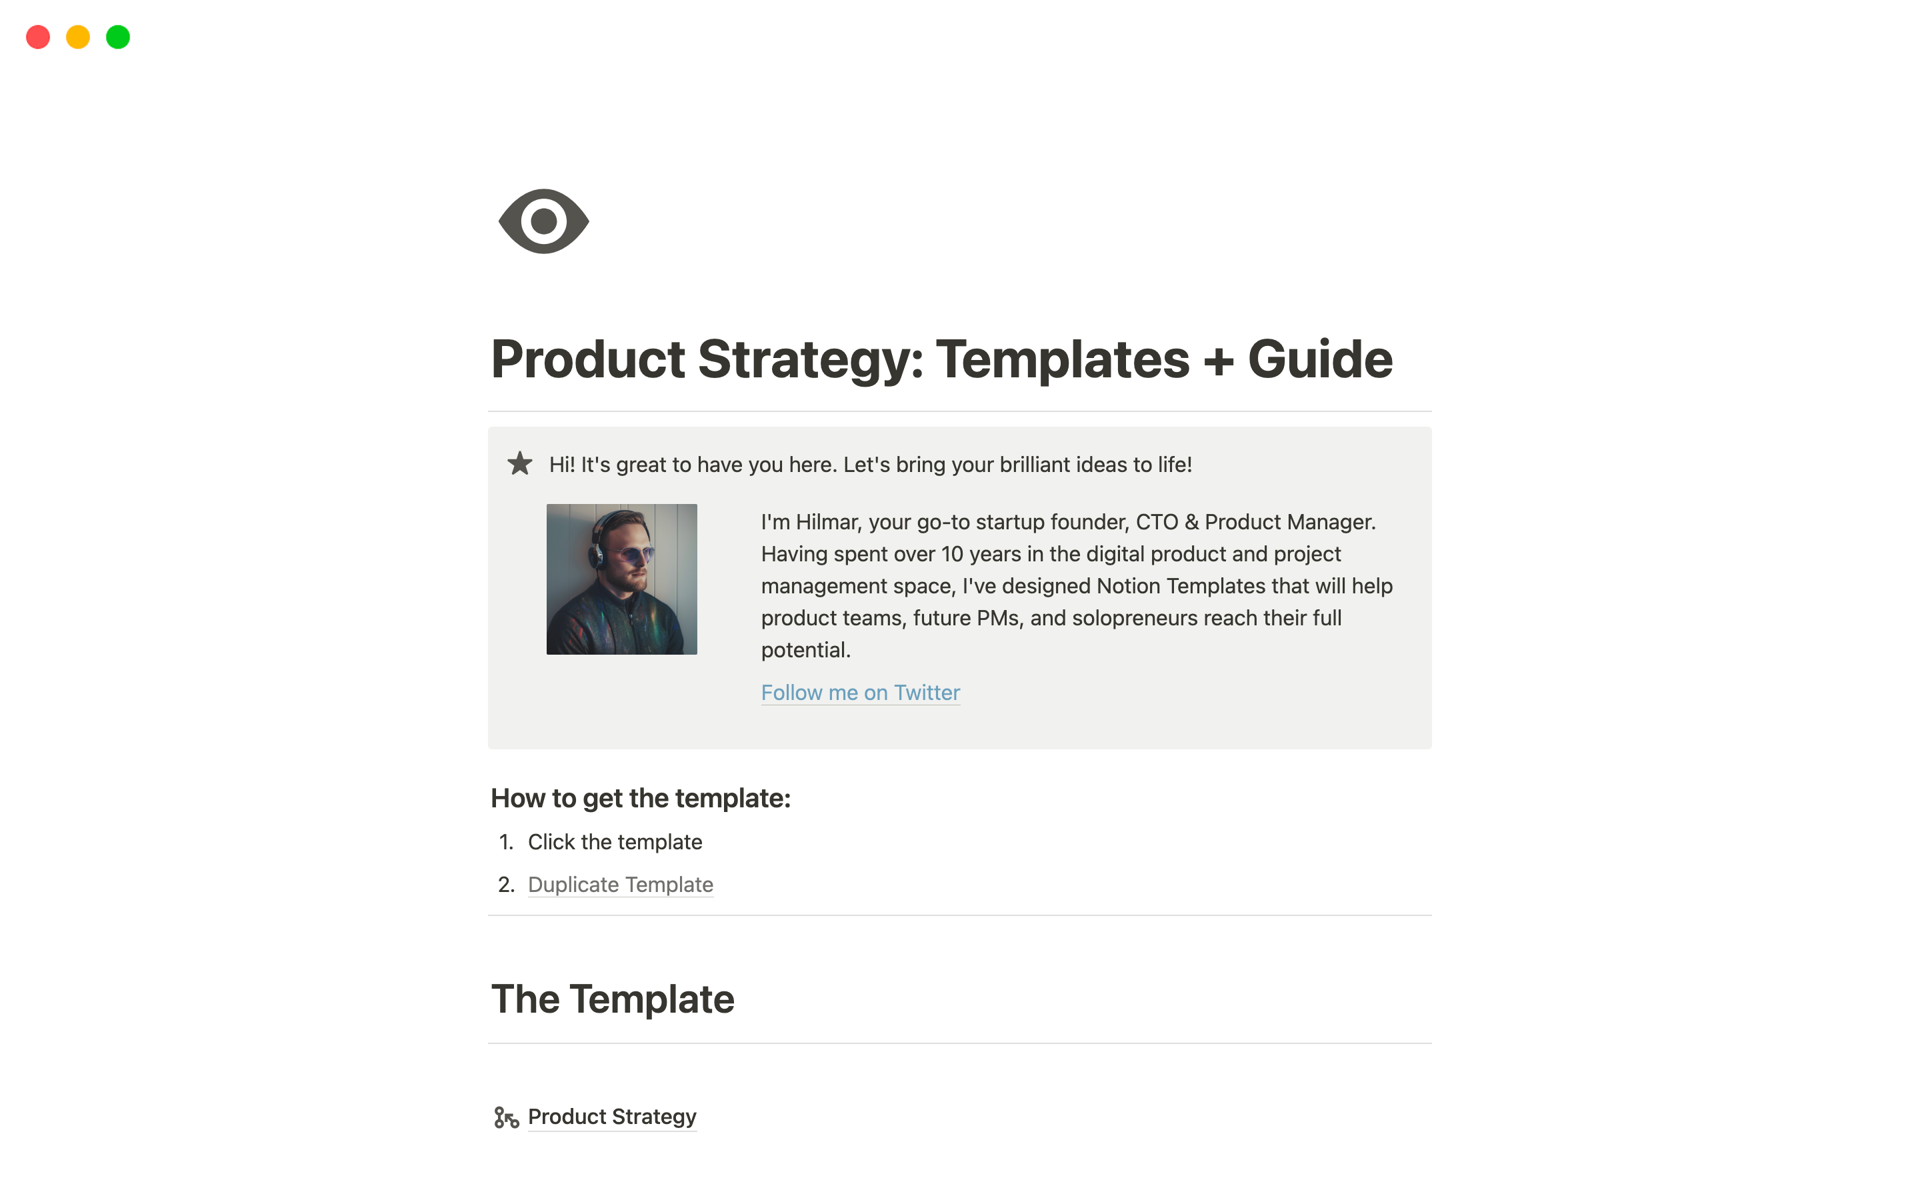 Uma prévia do modelo para Product Strategy: Templates + Guide